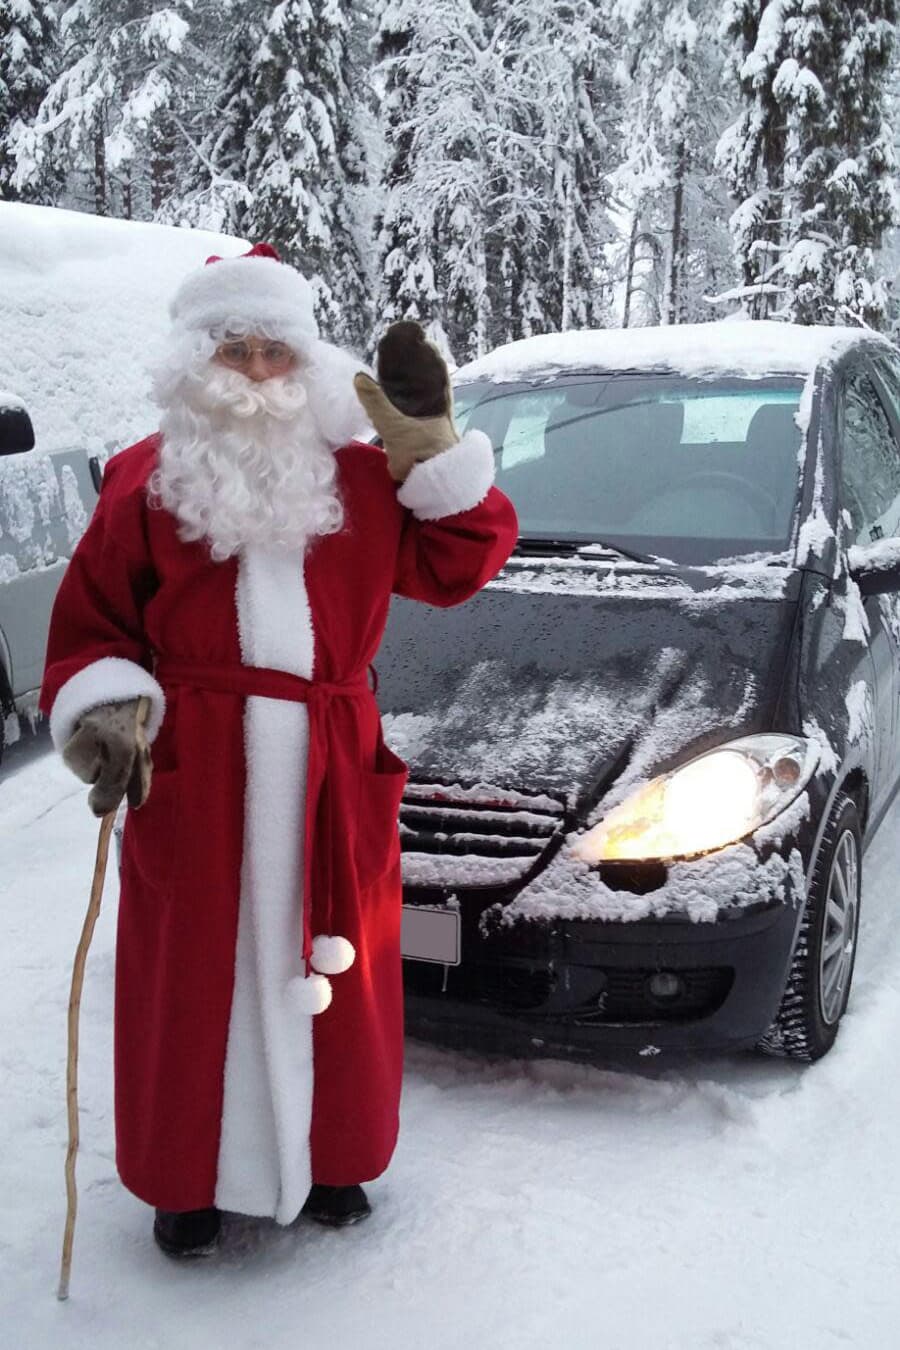 Riku Oikarinen, 21, on pukeutunut joulupukiksi ja vilkuttaa kameralle. Hänen takanaan on auto ja luminen maisema.